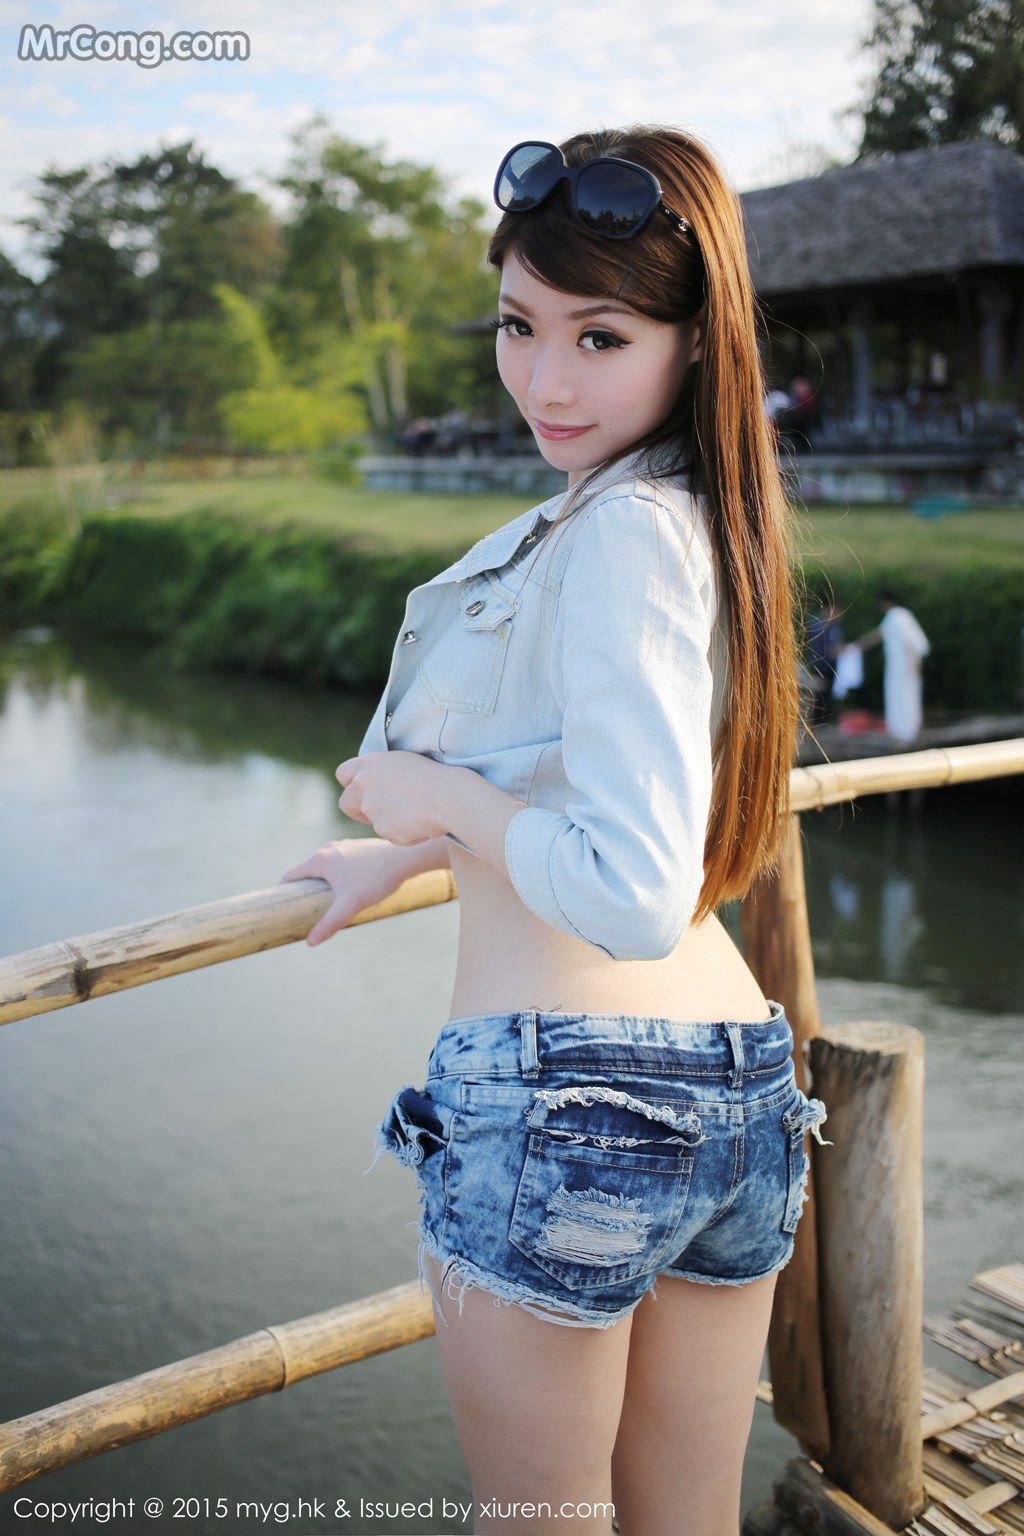 MyGirl Vol.094: Model Mara Jiang (Mara 酱) (57 photos) photo 2-1